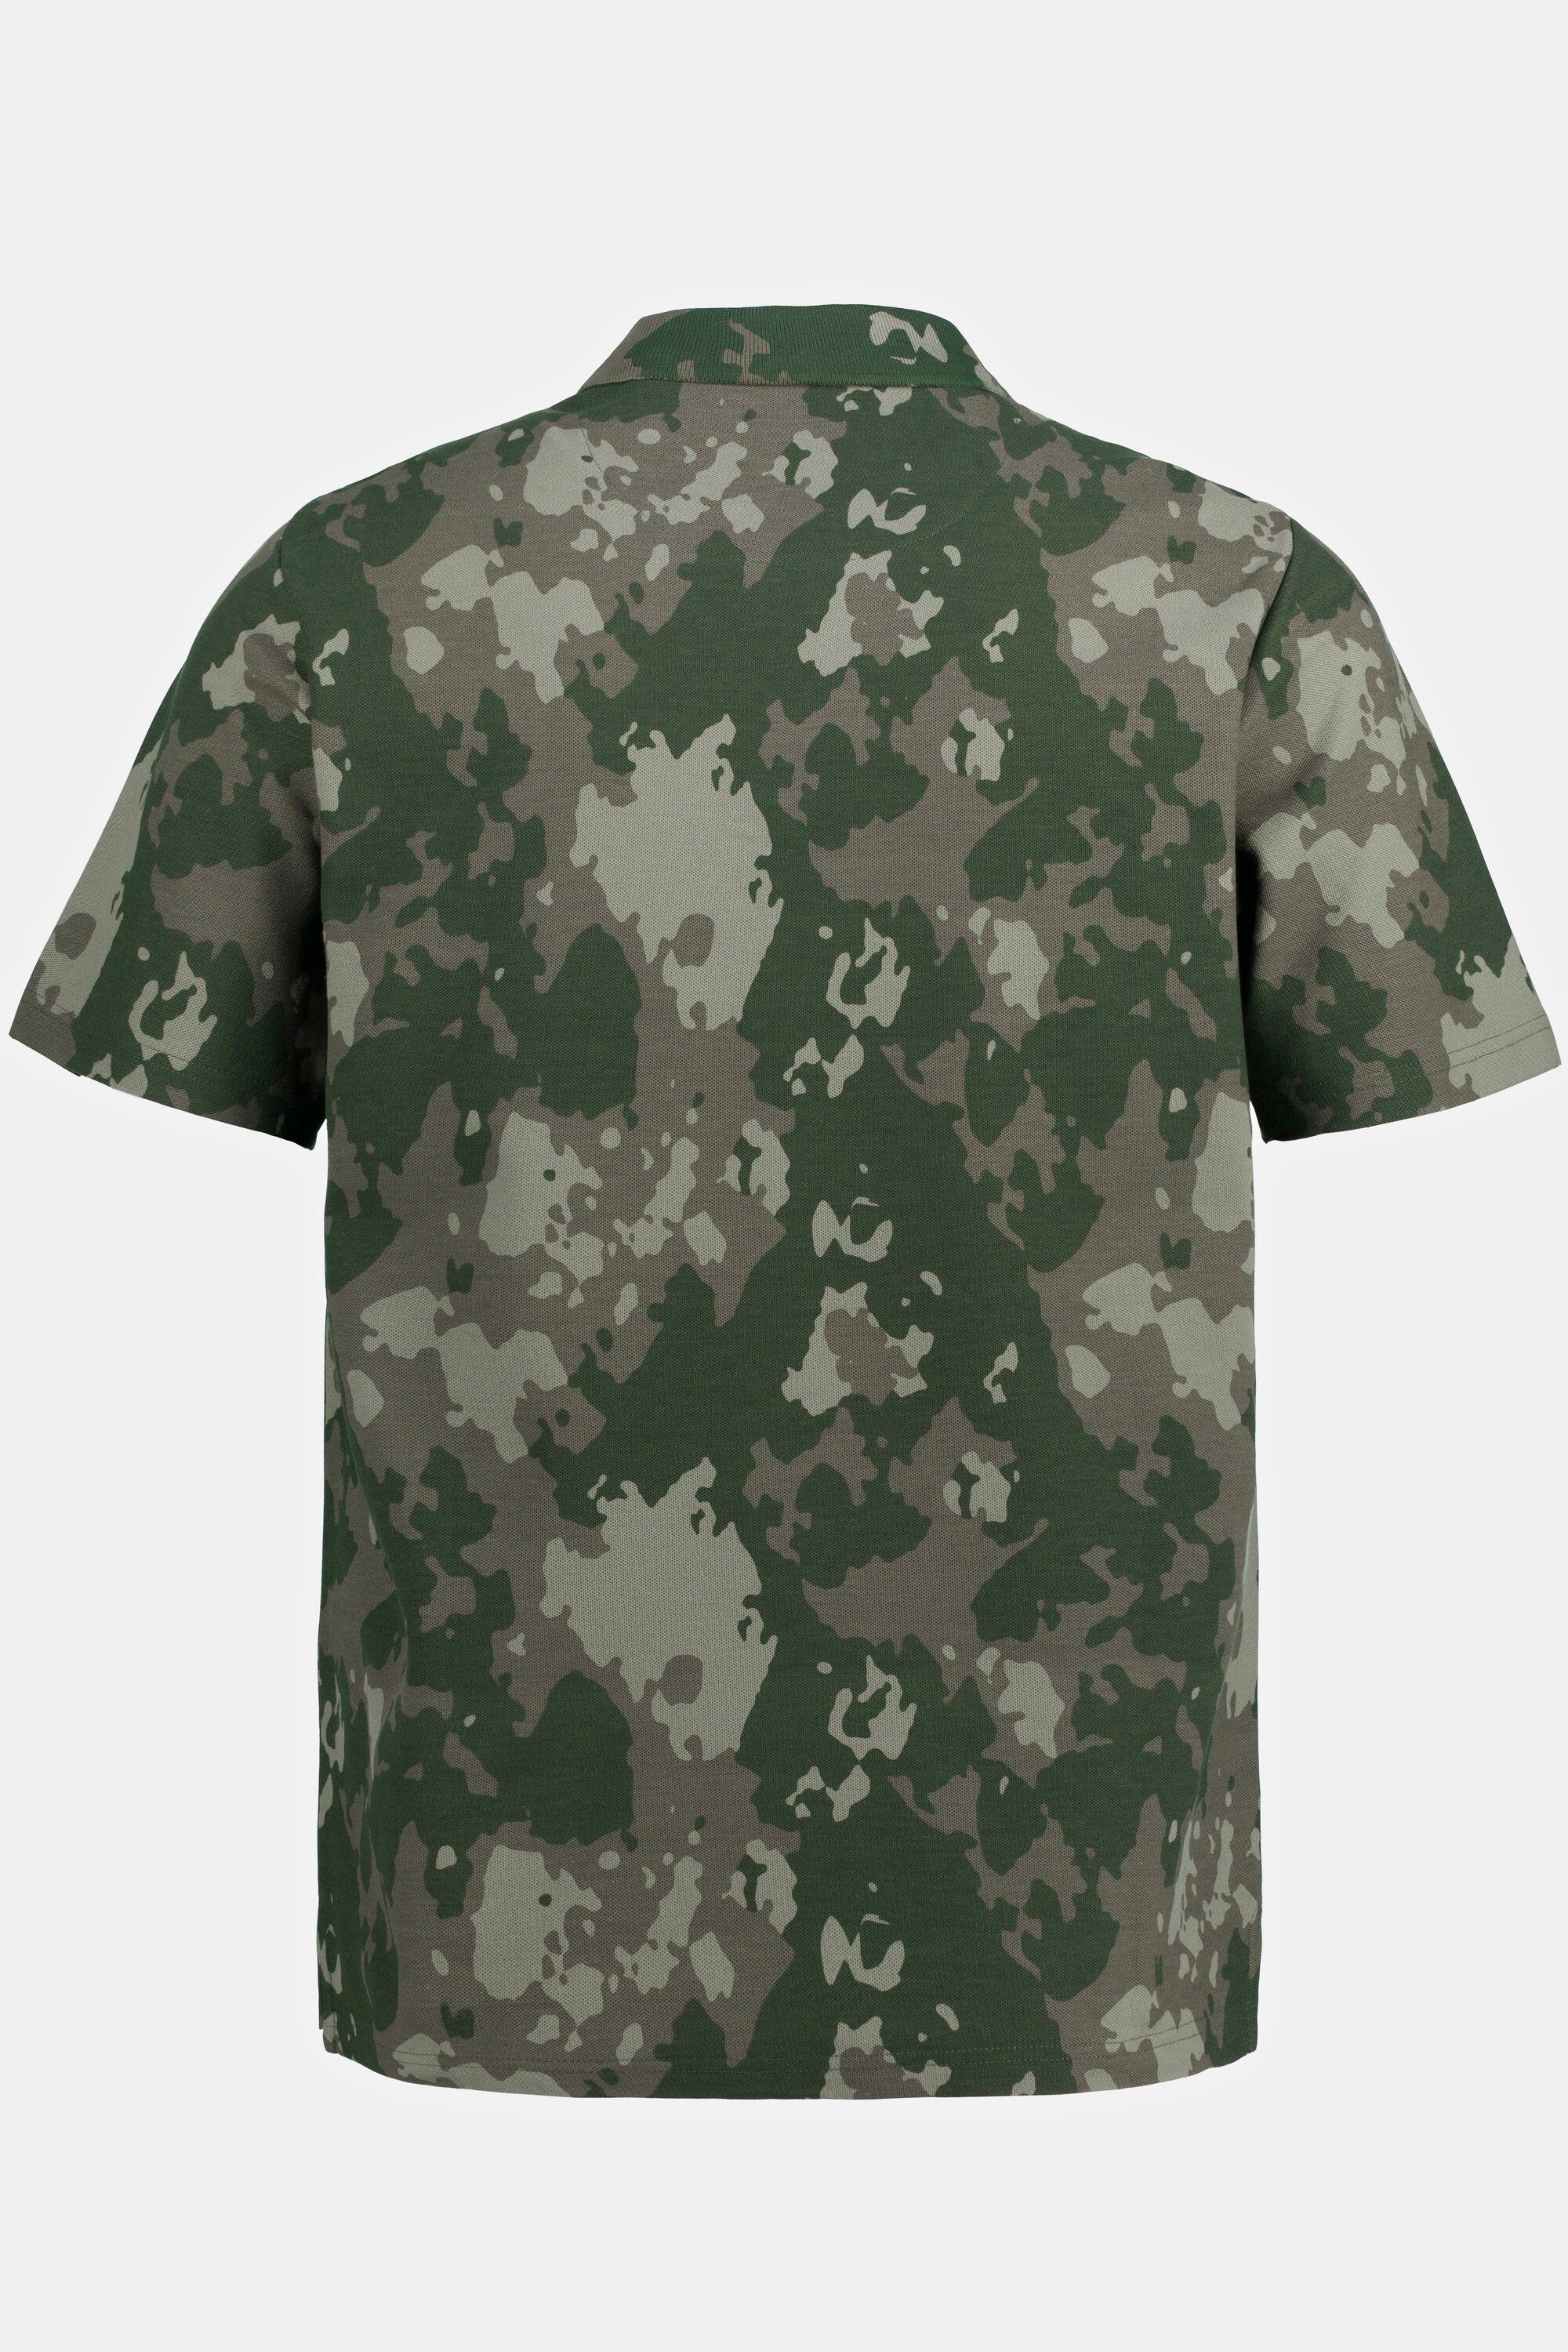 JP1880 Poloshirt Camouflage Print Halbarm Poloshirt